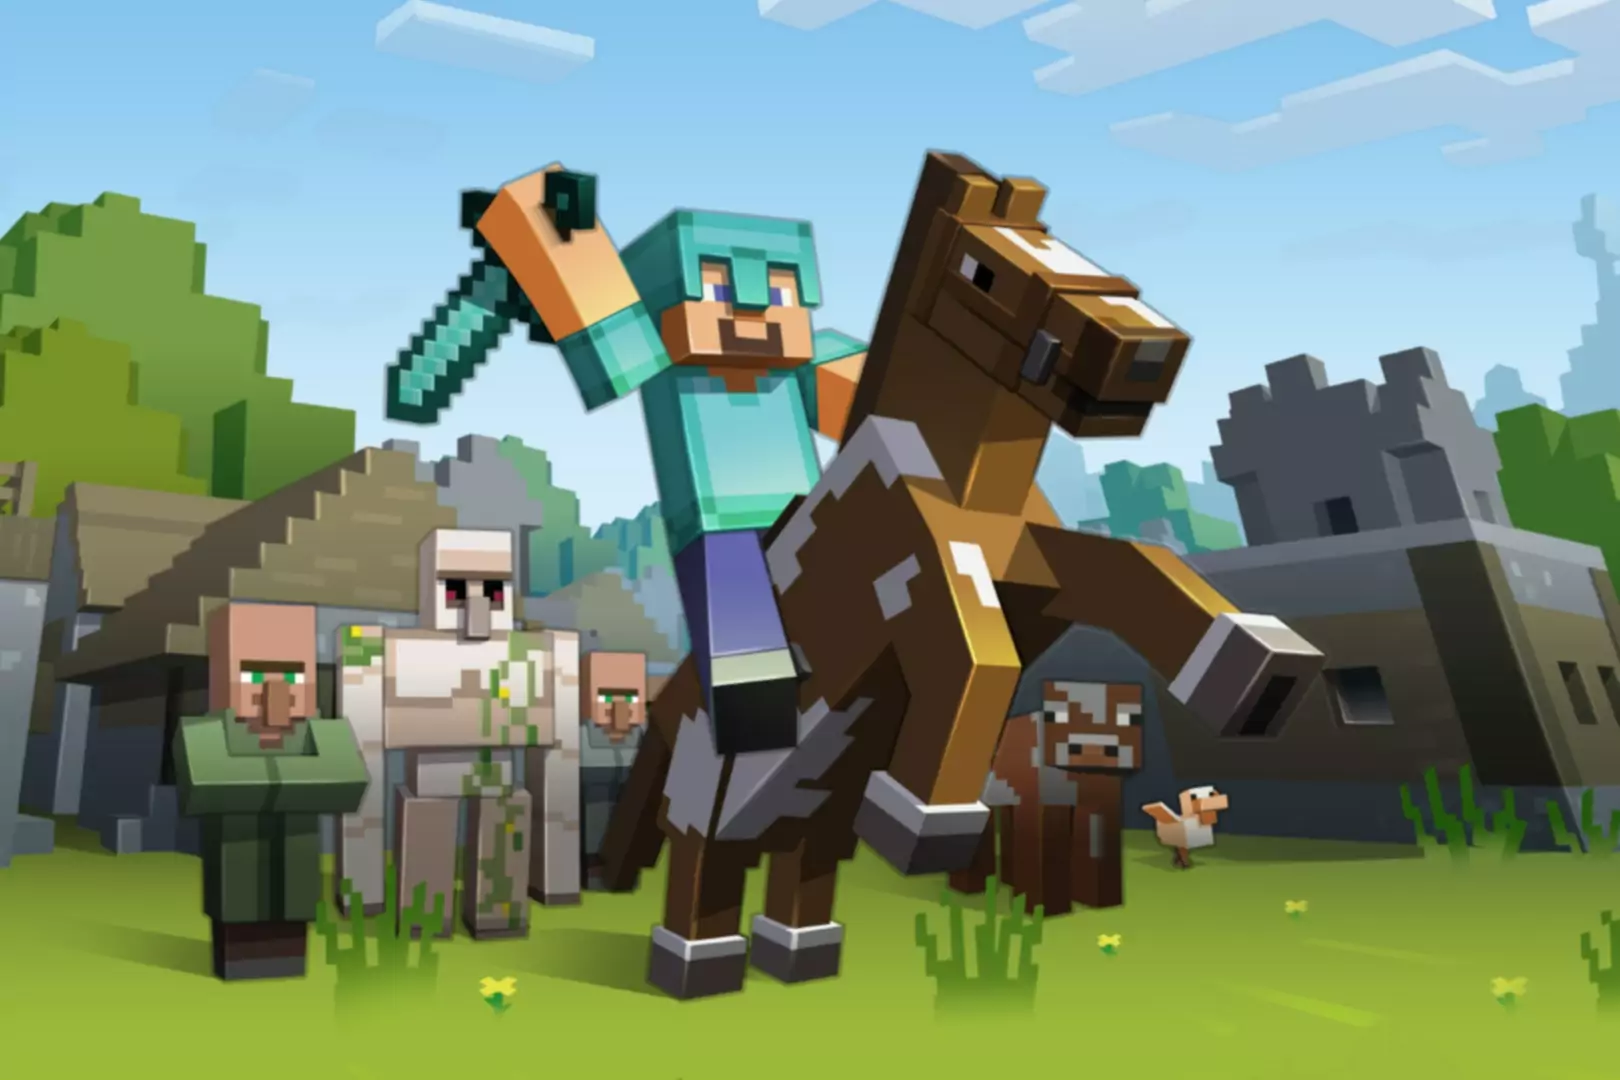 Schermata del gioco Minecraft con il personaggio che cavalca il cavallo e agita la spada